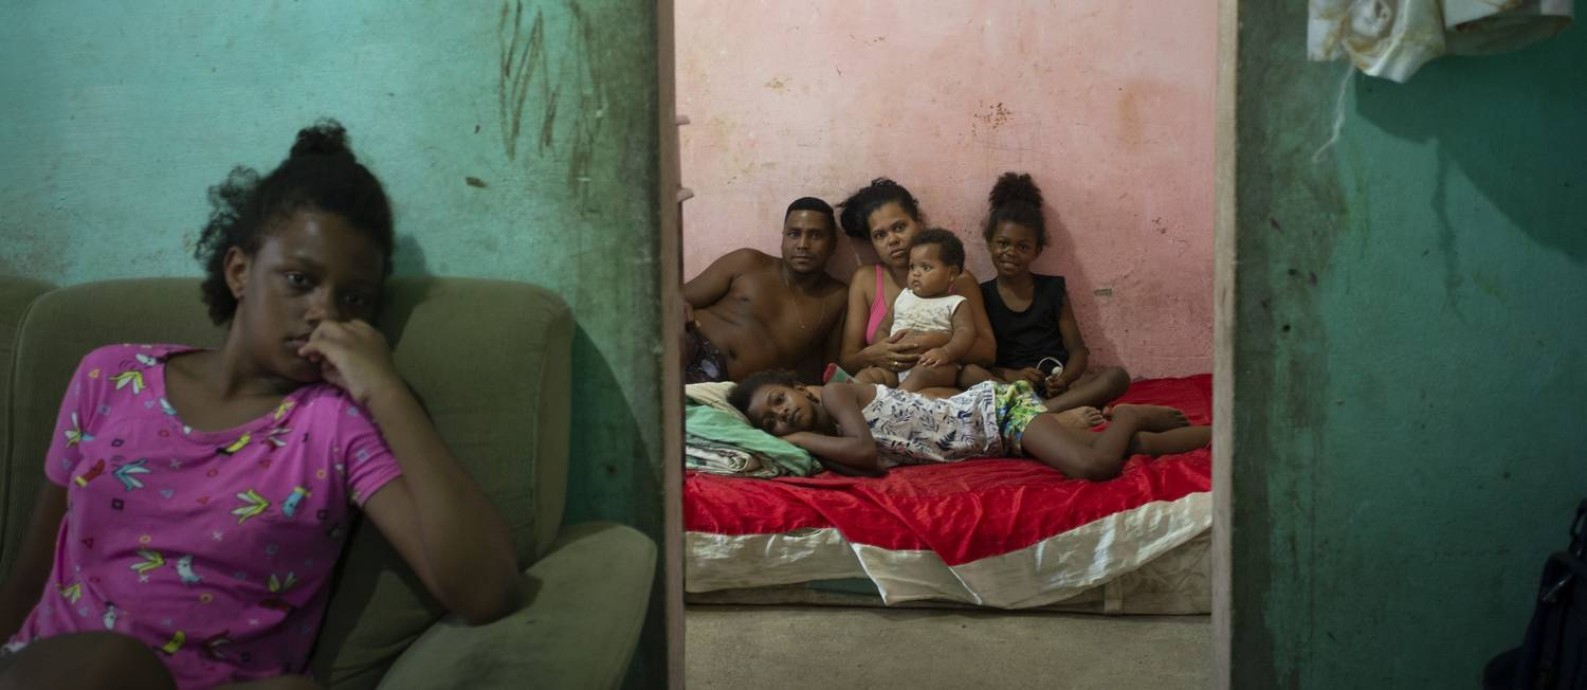 Natália Soares da Silva, moradora de Vila Americana, em Nova Iguaçu, tem quatro filhos e nenhum auxílio do governo. A família vive com biscates do marido Foto: Márcia Foletto / Agência O Globo